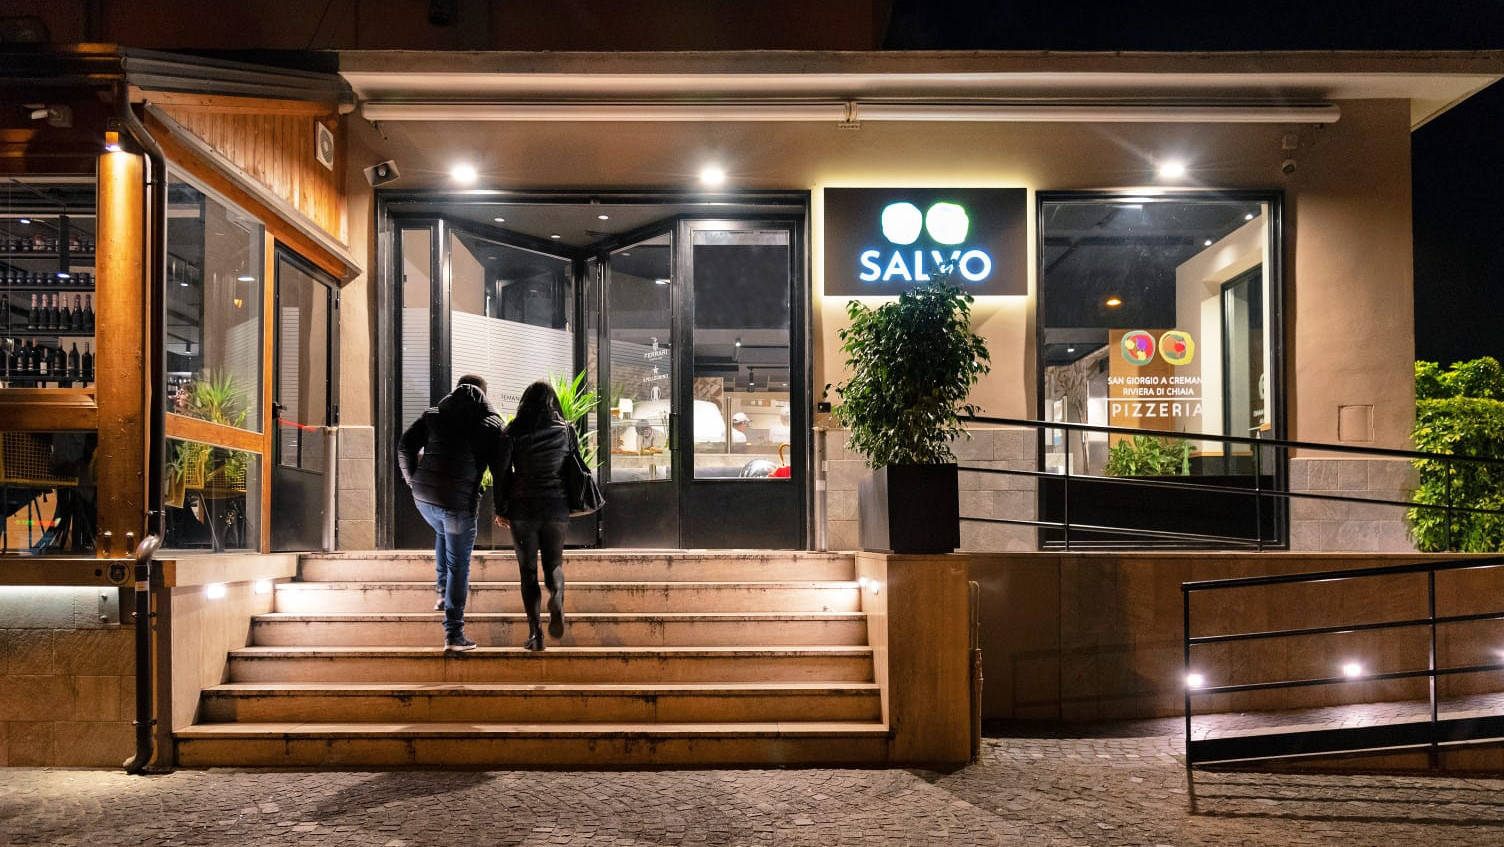 Foto di Pizzeria Salvo - San Giorgio a Cremano